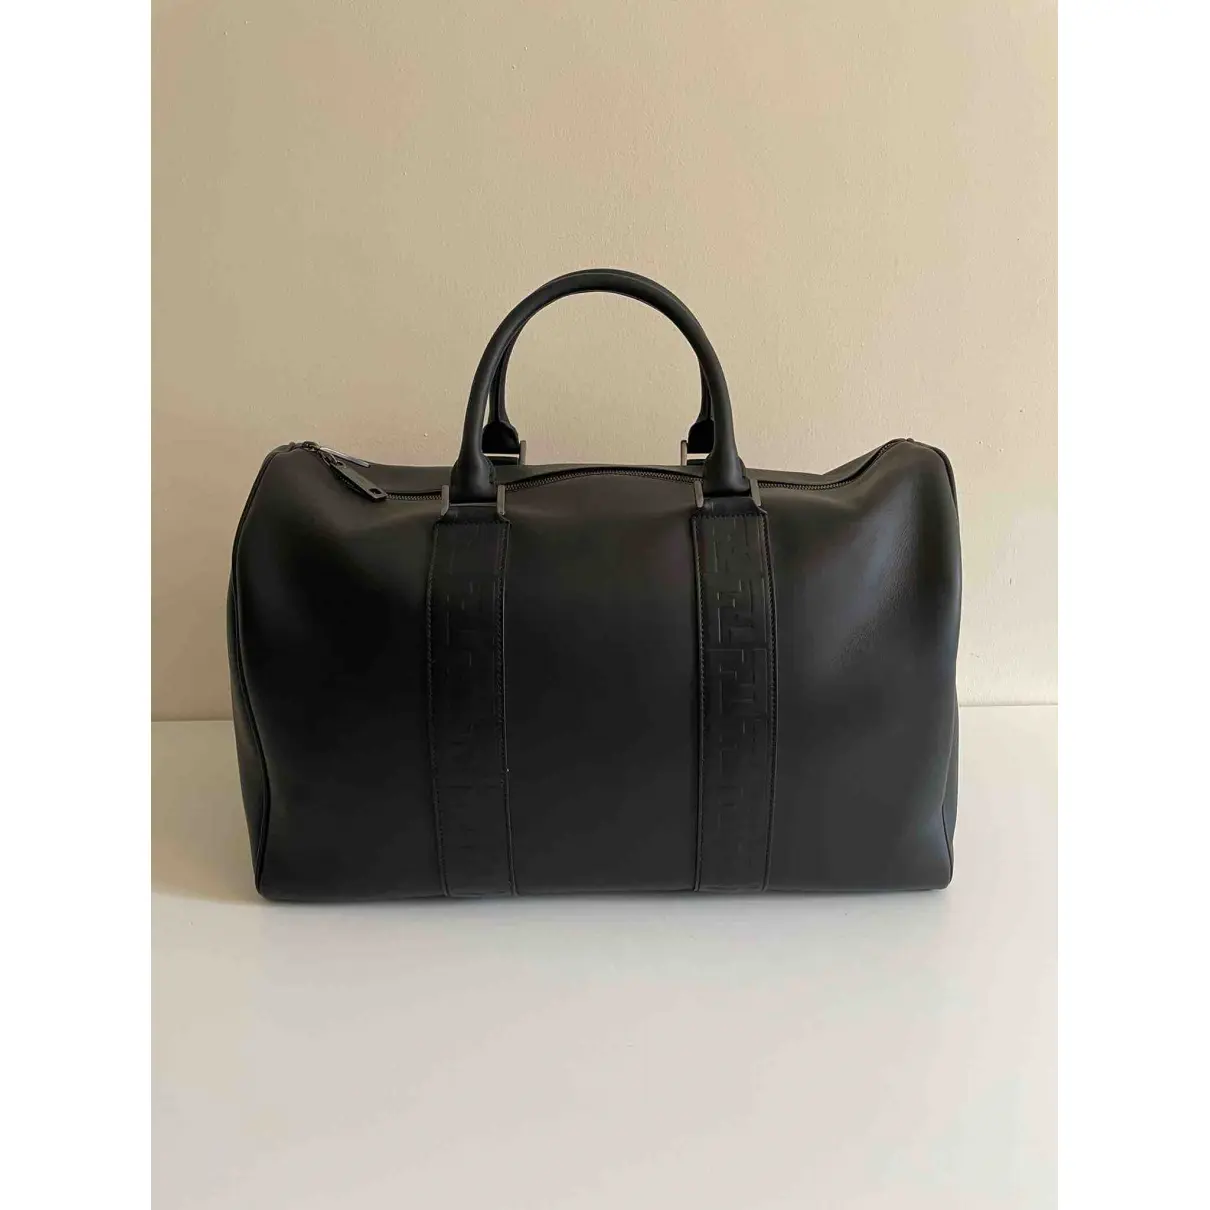 Buy Fendi Leather 48h bag online